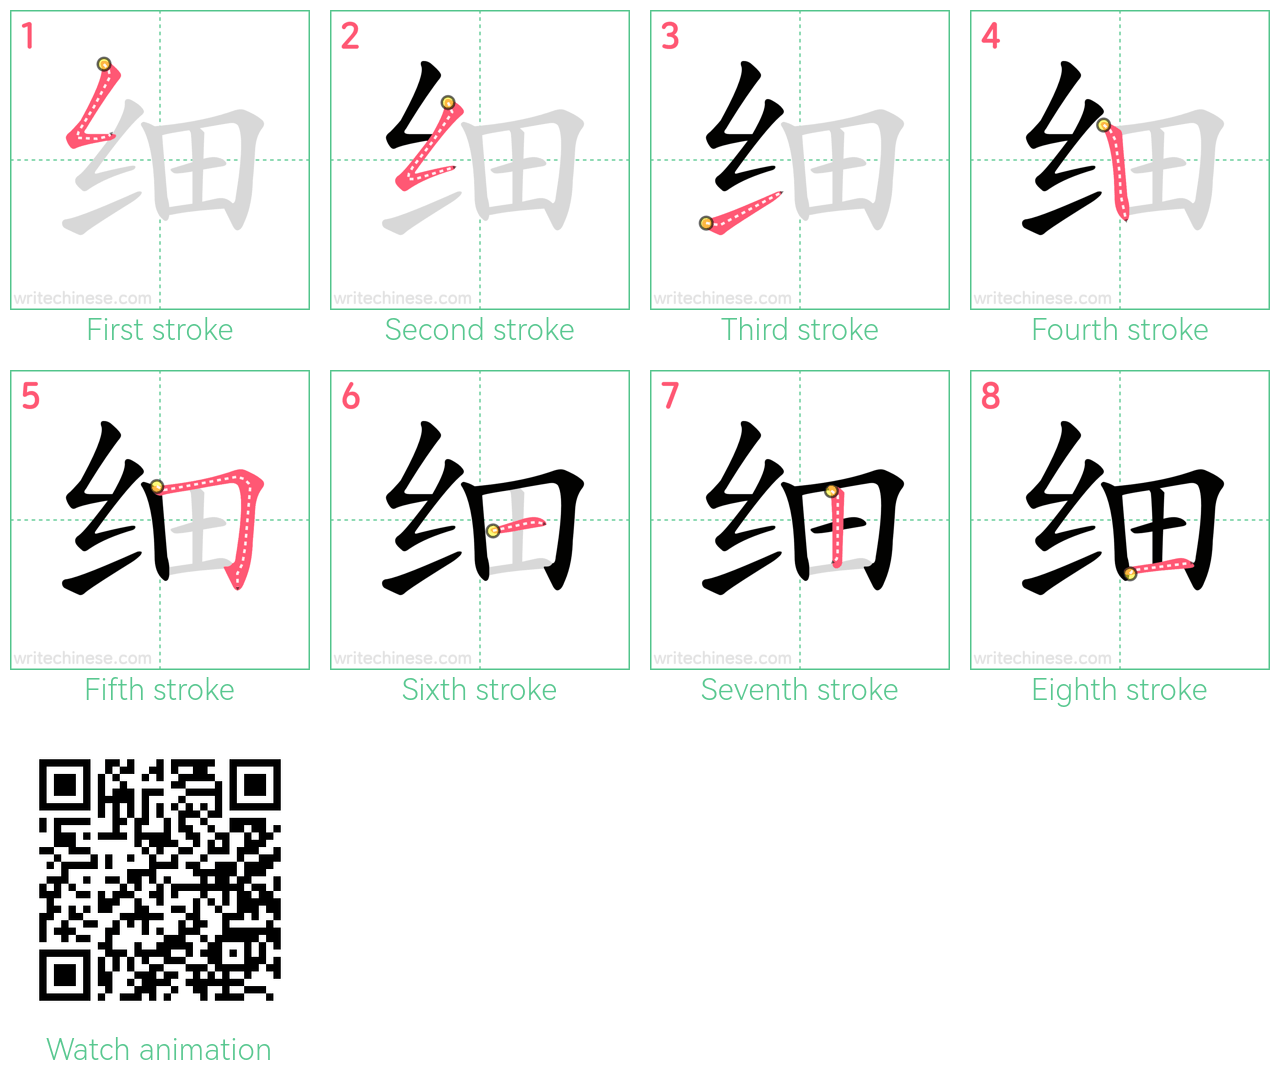 细 step-by-step stroke order diagrams